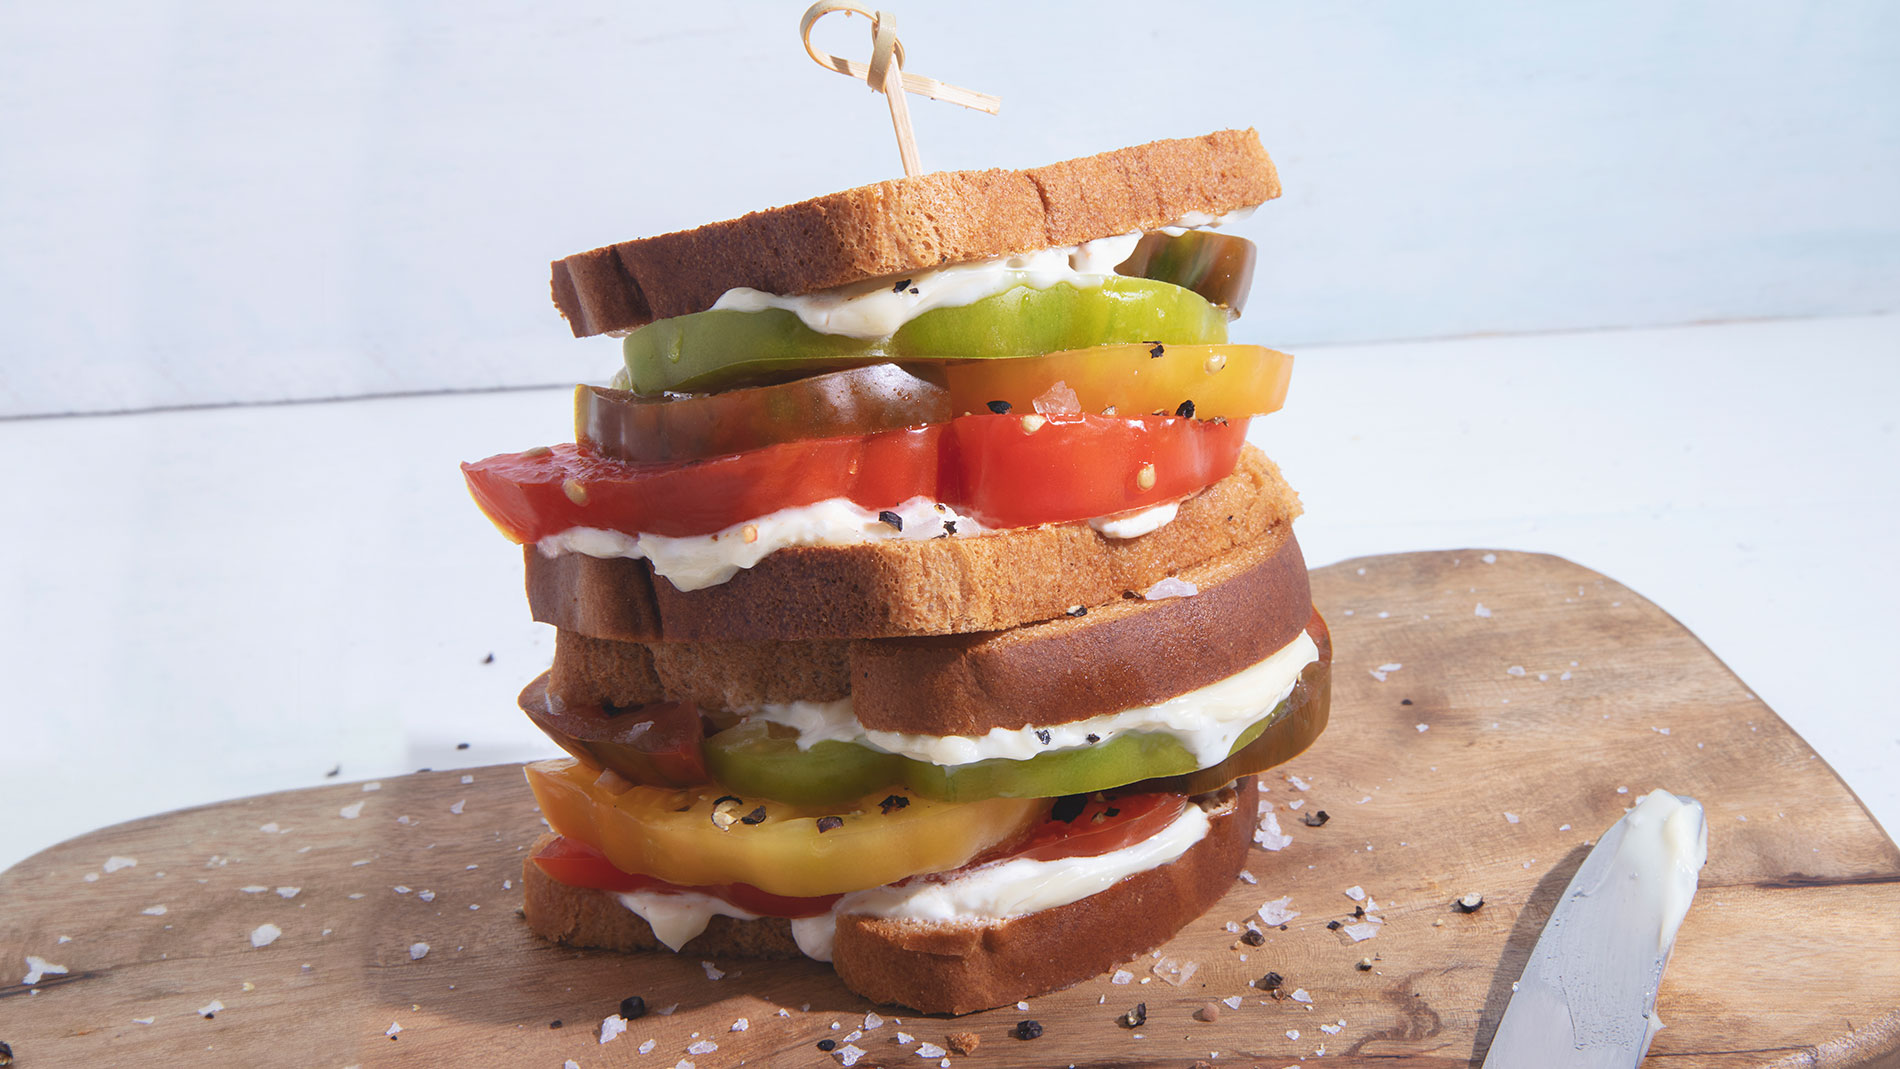 Make this tomato sandwich courtesy of Tempus’ Ben Grupe